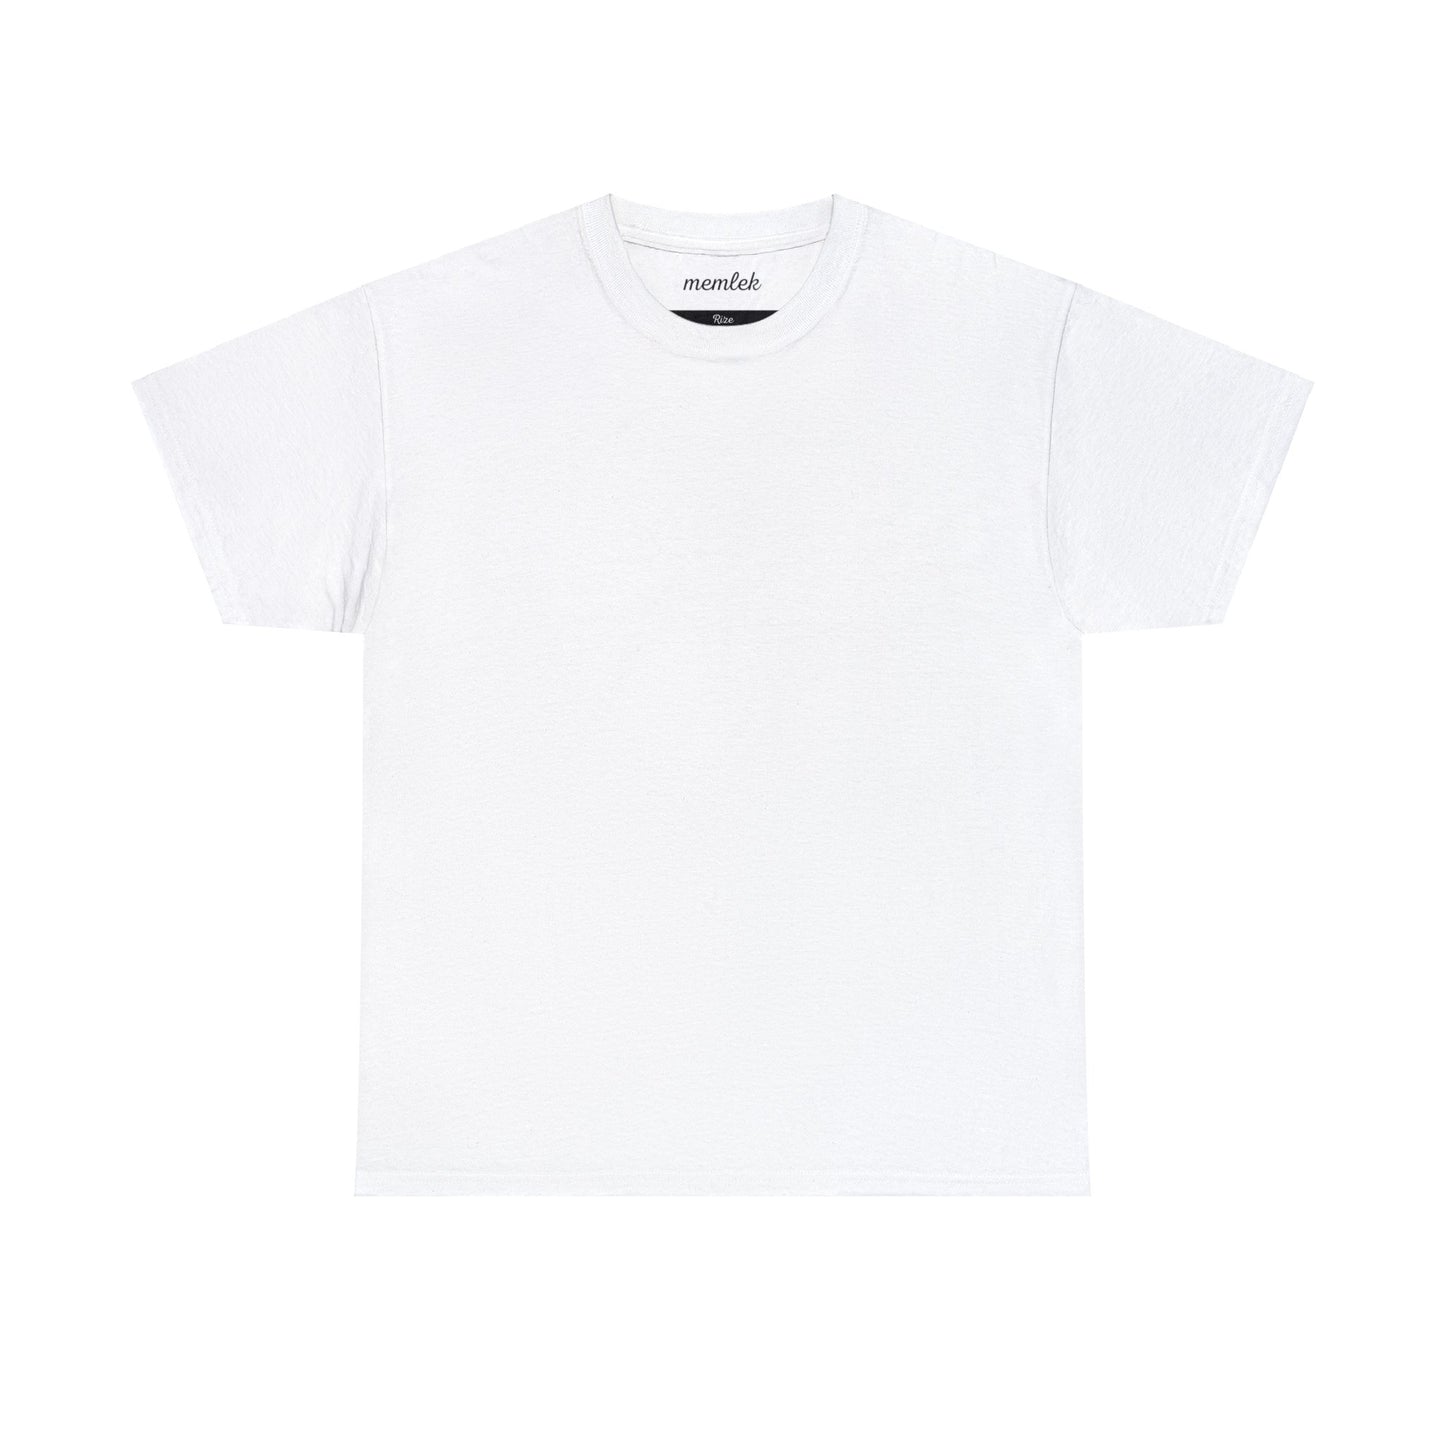 Kurt - 53 Rize - T-Shirt - Back Print - Black/White